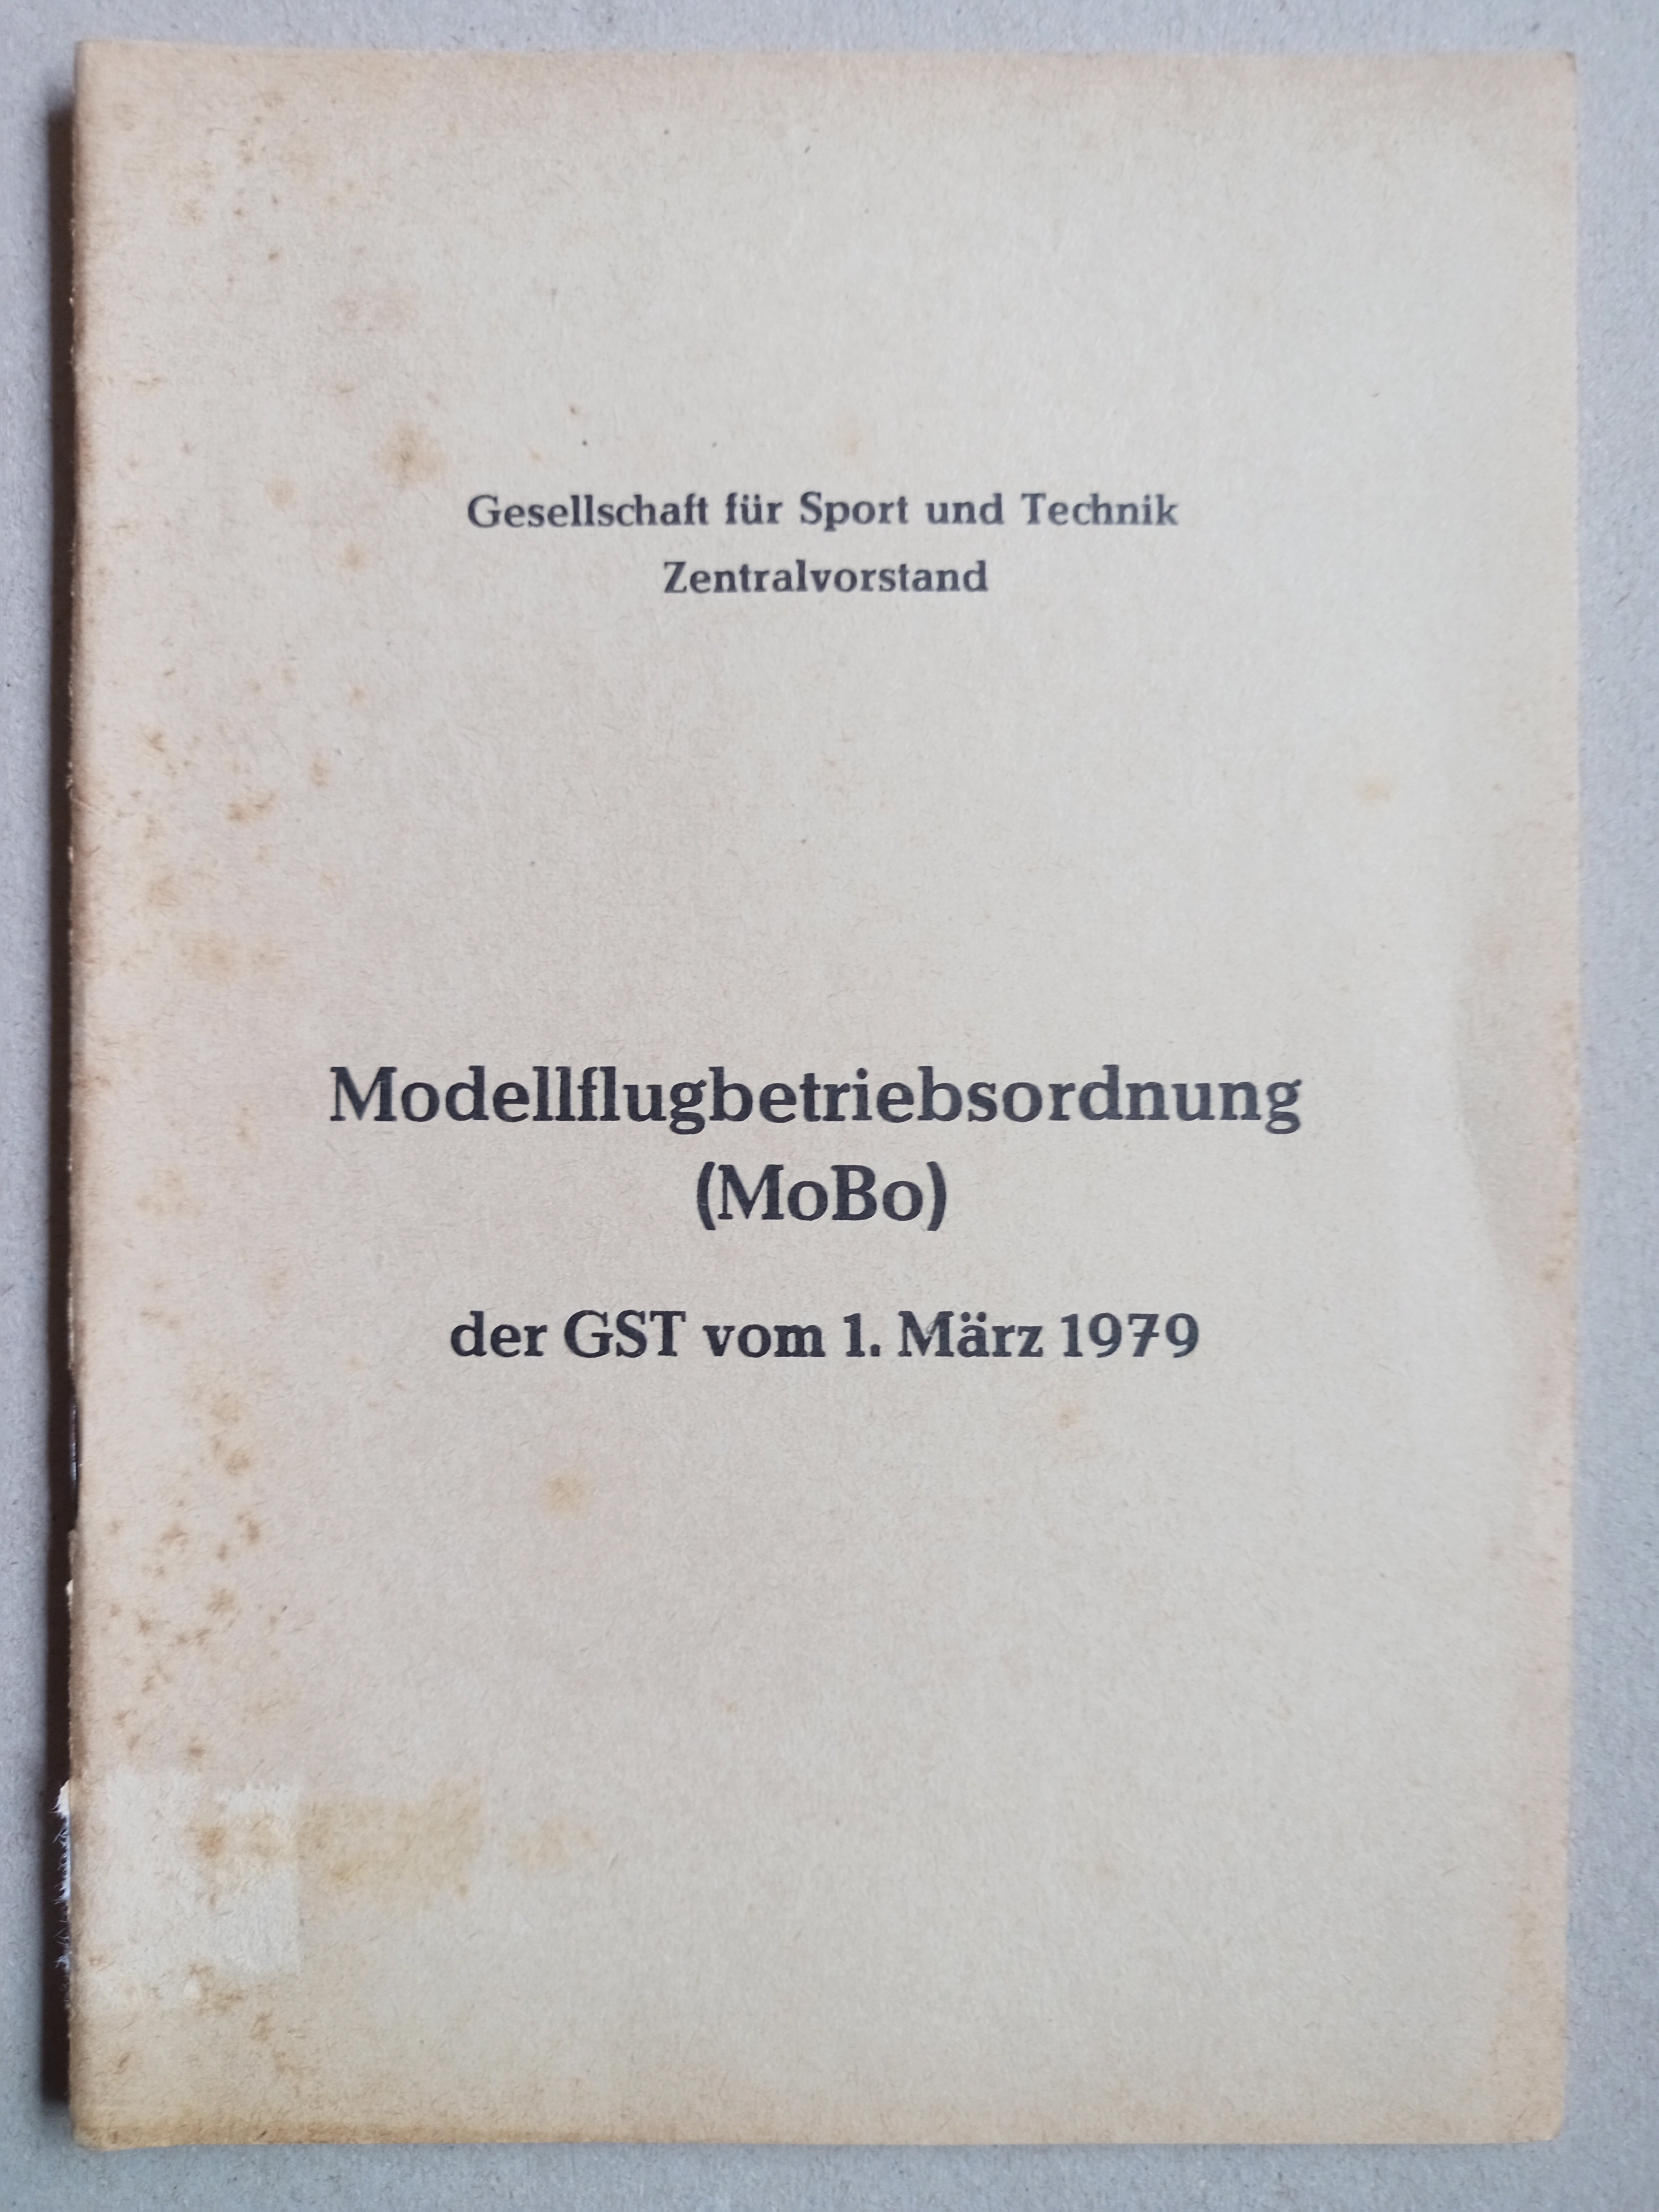 Modellflugbetriebsordnung der GST (Deutsches Segelflugmuseum mit Modellflug CC BY-NC-SA)